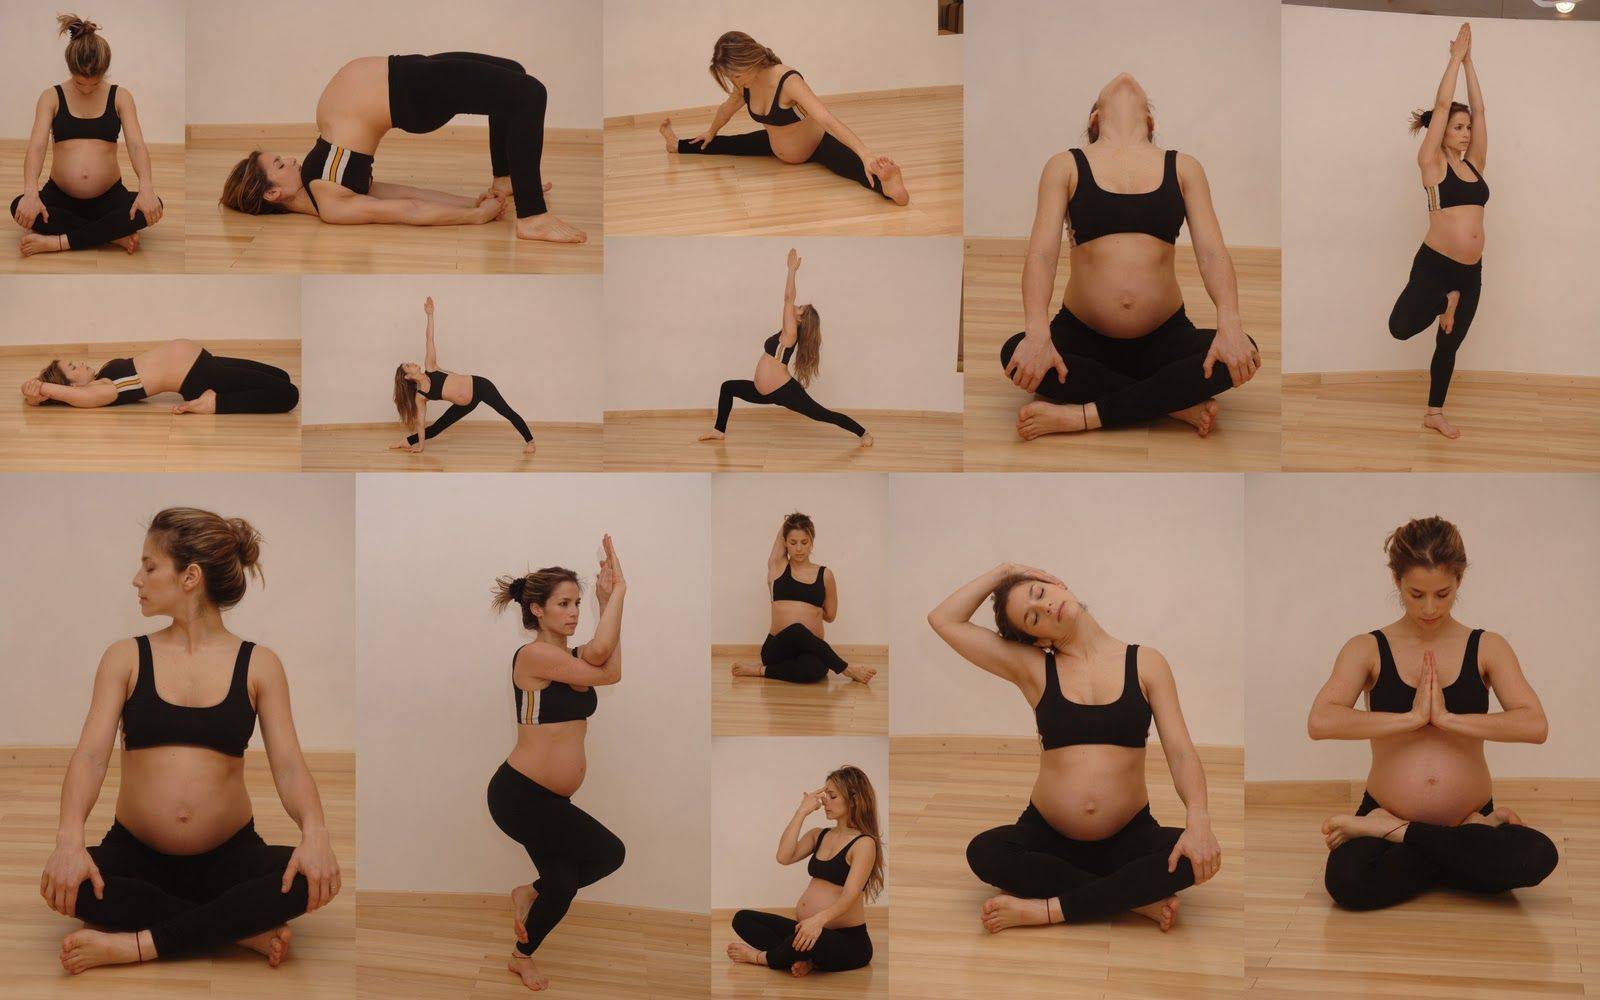 Йога для беременных - зачем, как и сколько надо тренироваться?